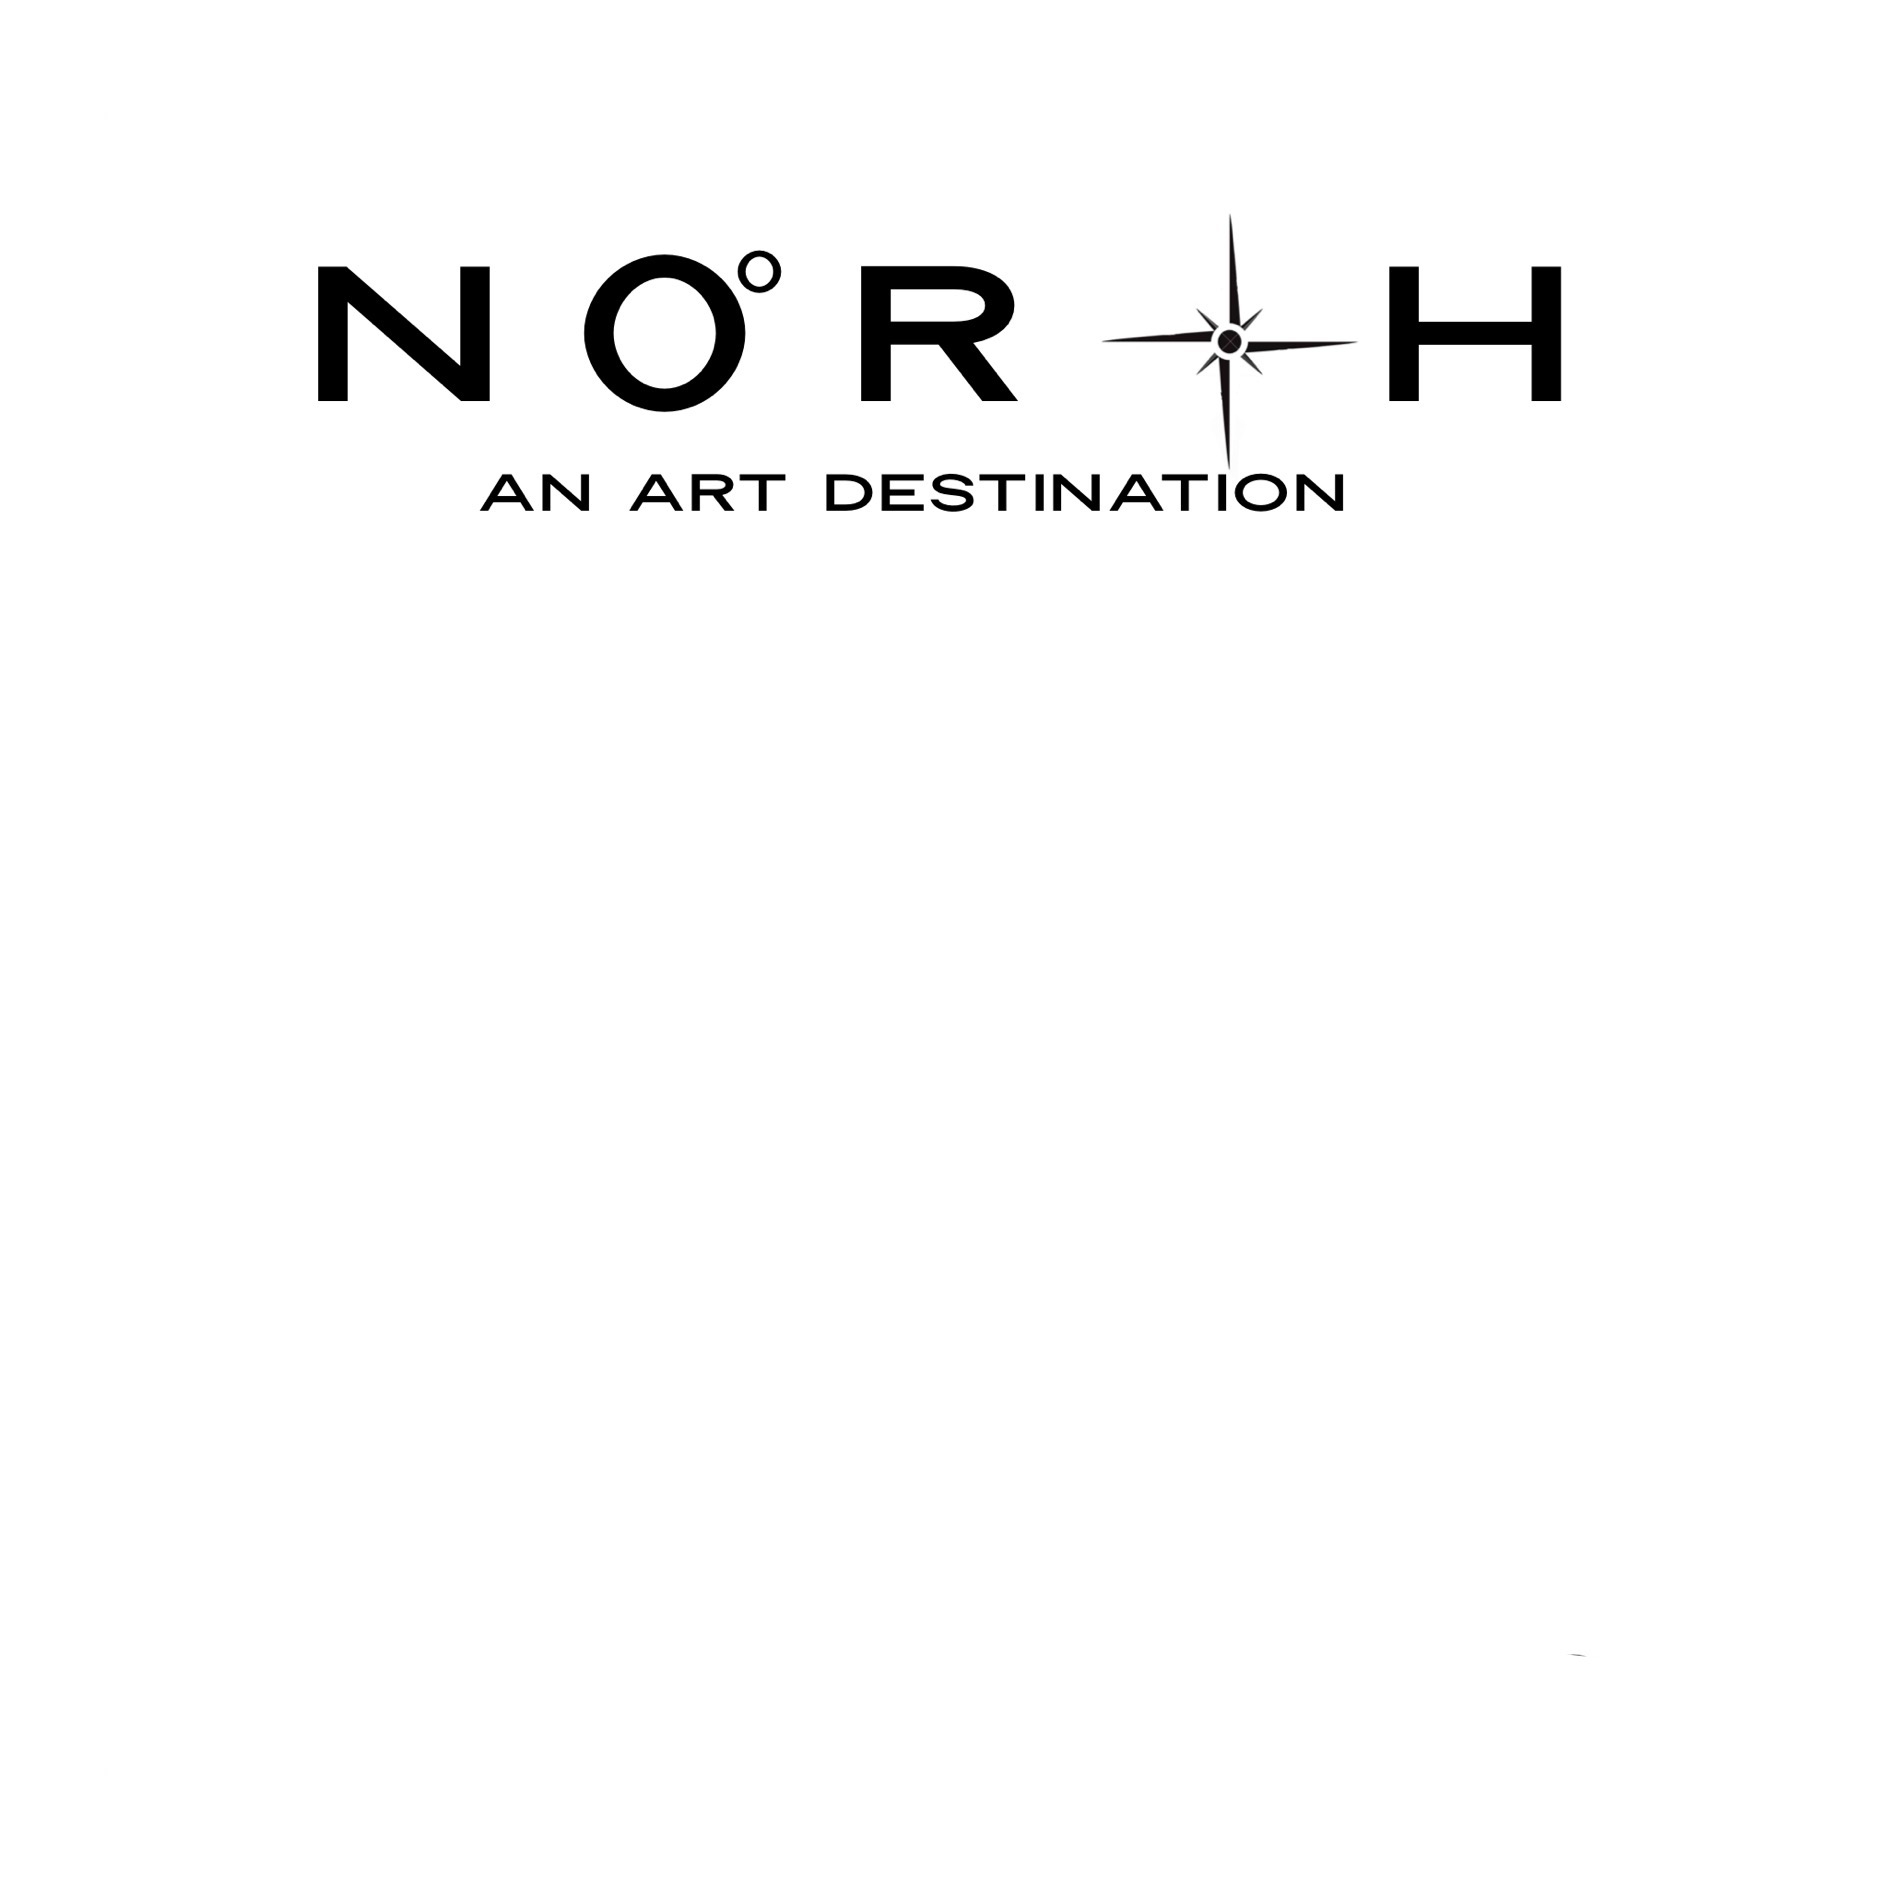 North: An Art Destination